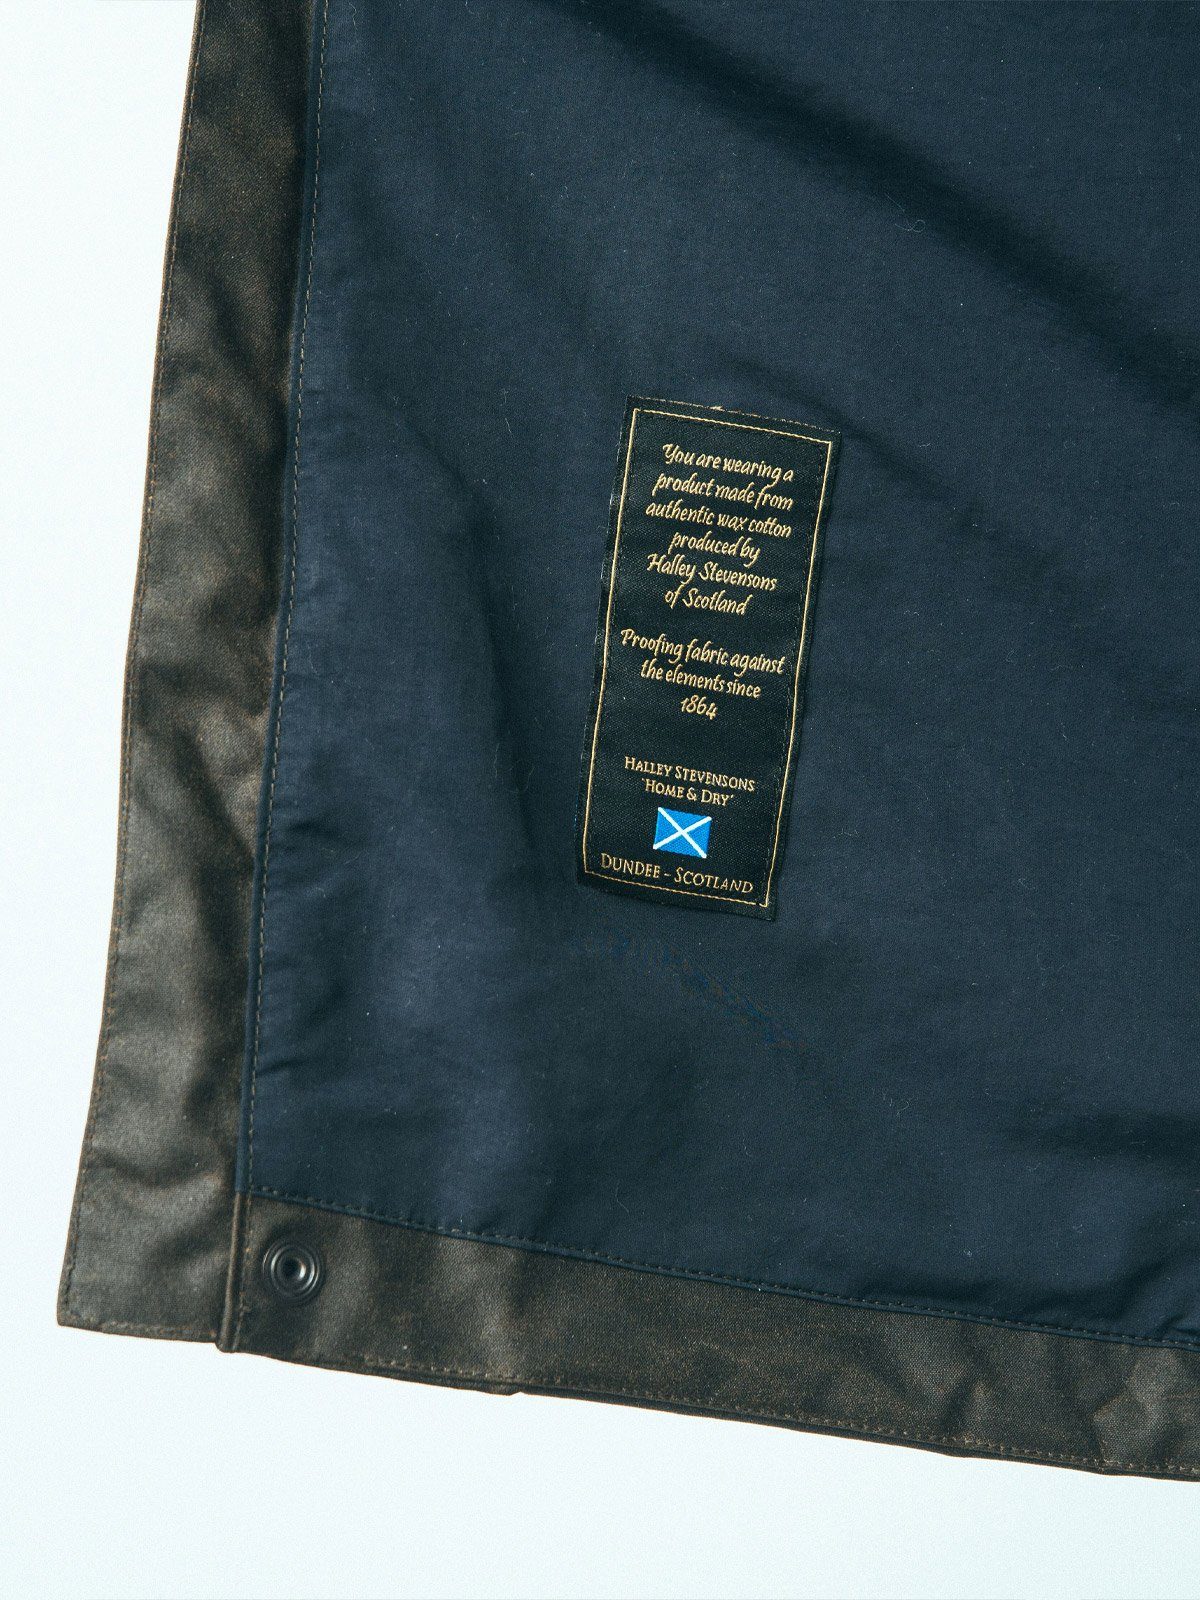 Eiger Waxed Canvas Jacket by Mission Workshop - Säänkestävät laukut ja tekniset vaatteet - San Francisco & Los Angeles - Rakennettu kestämään - ikuinen takuu